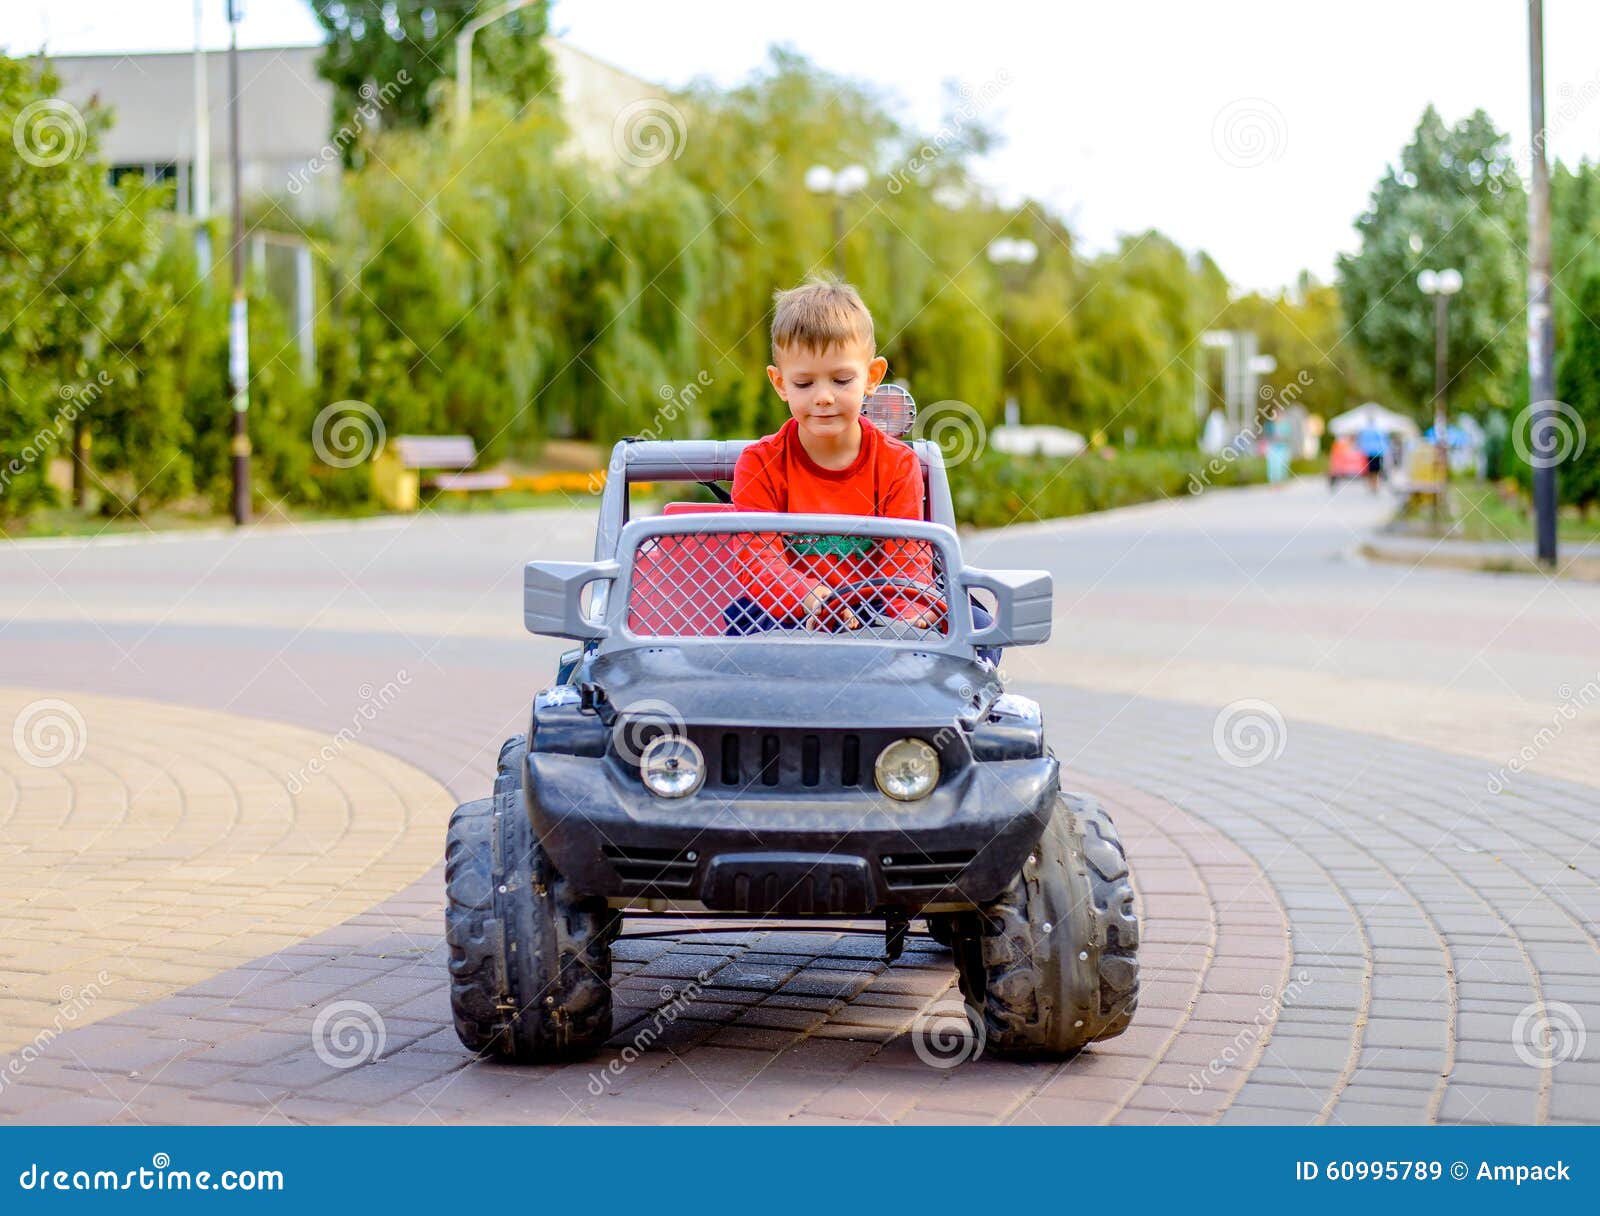 Netter kleiner Junge, der einen Spielzeuglastwagen fährt. Der nette kleine Junge, der einen großen mechanischen Spielzeuglastwagen dreht das Lenkrad mit einem Blick der Konzentration als spielt er fährt, in einem Stadtpark